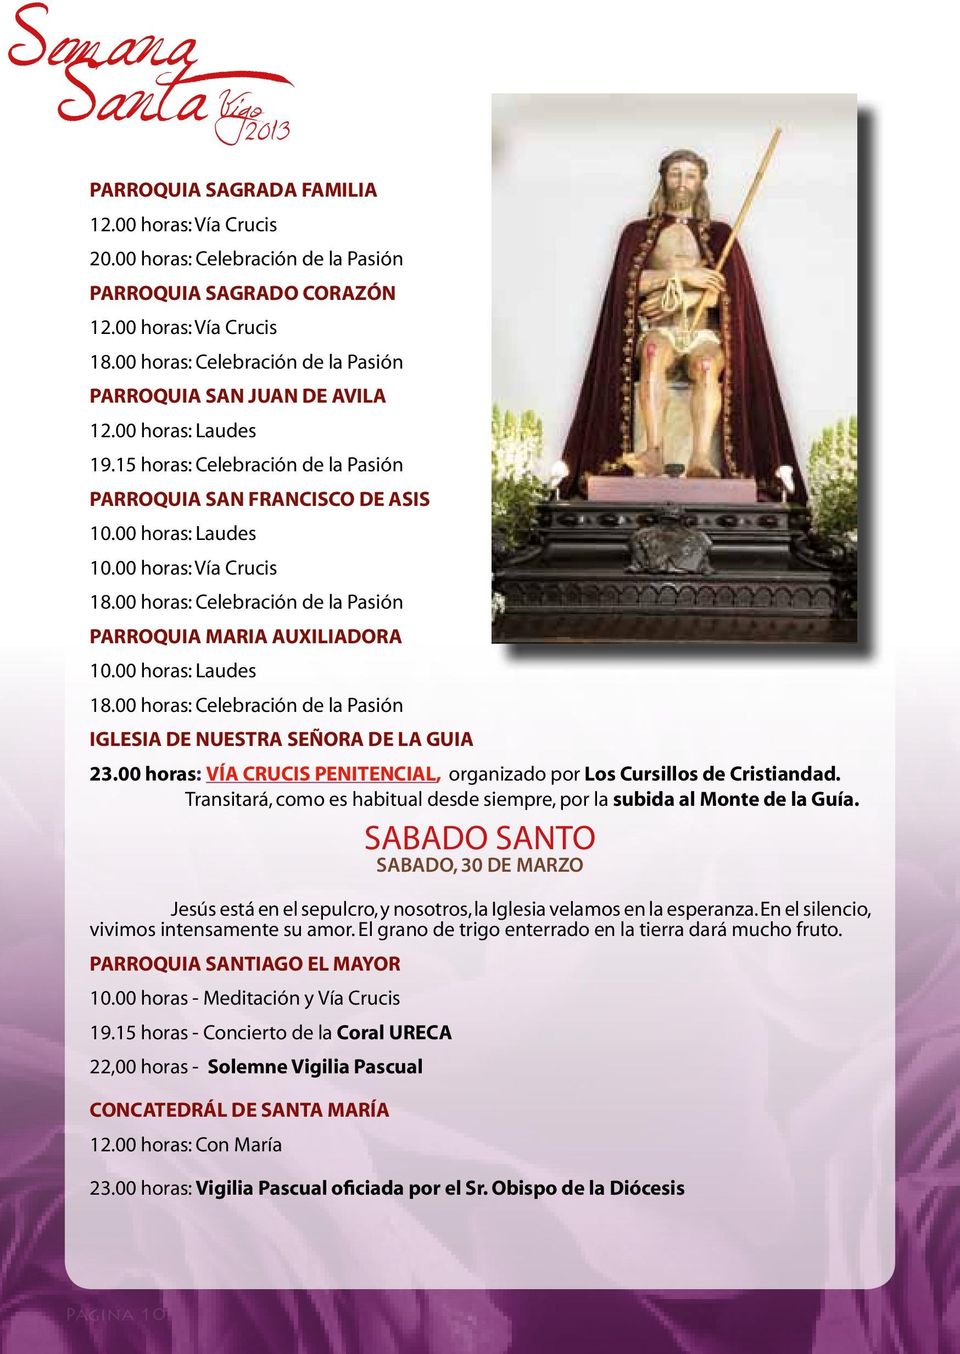 00 horas: Celebración de la Pasión PARROQUIA MARIA AUXILIADORA 10.00 horas: Laudes 18.00 horas: Celebración de la Pasión IGLESIA DE NUESTRA SEÑORA DE LA GUIA 23.